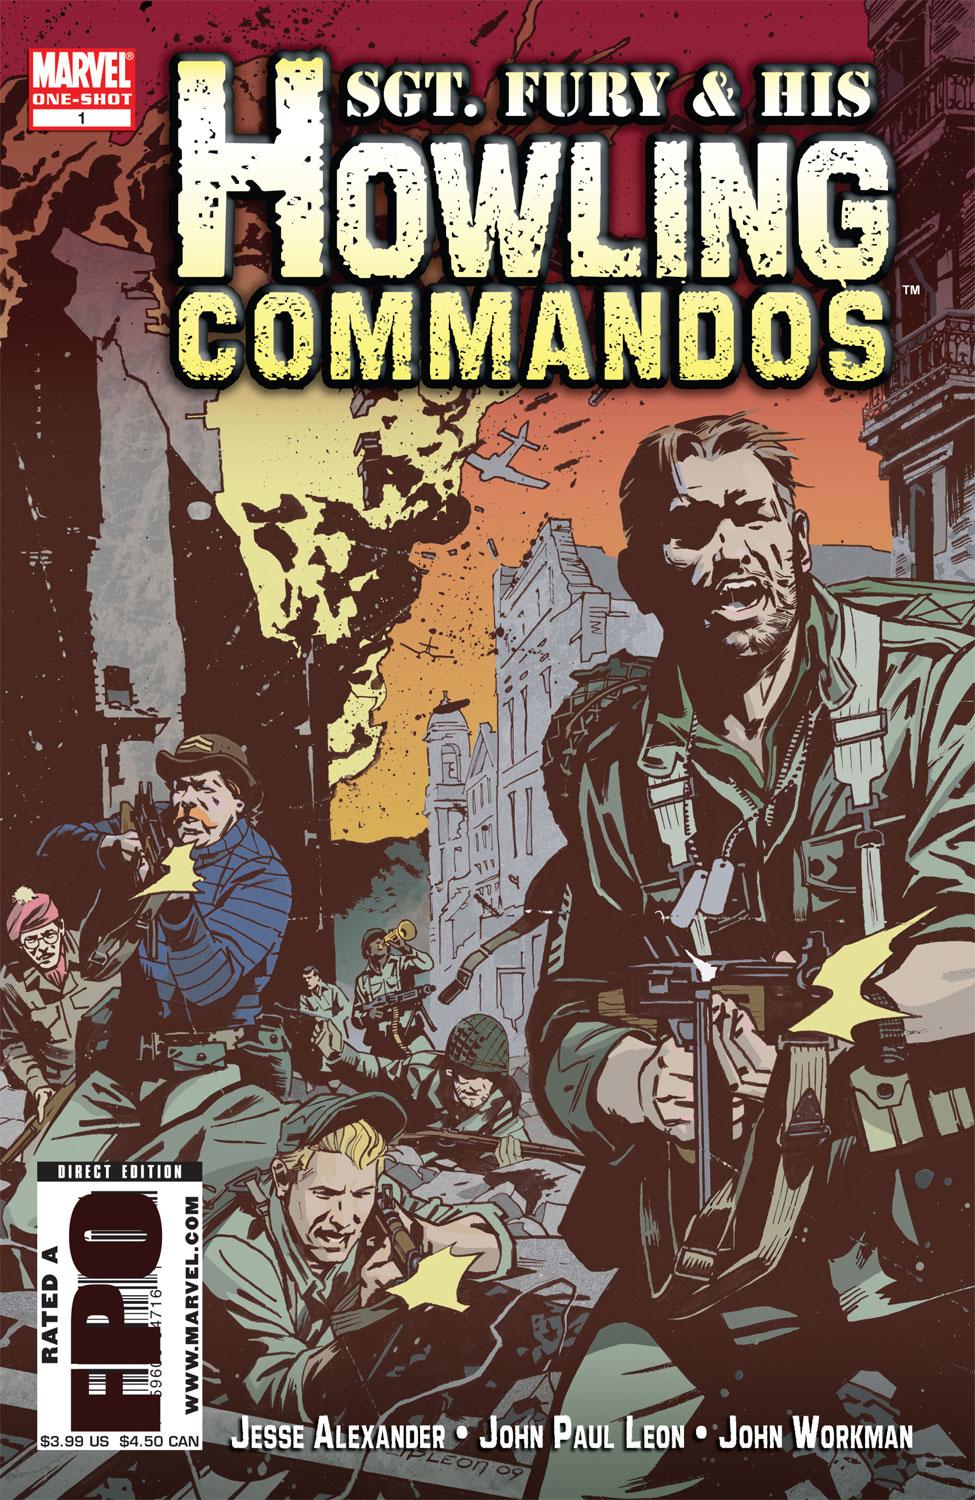 Howling Commandos (2009) #1